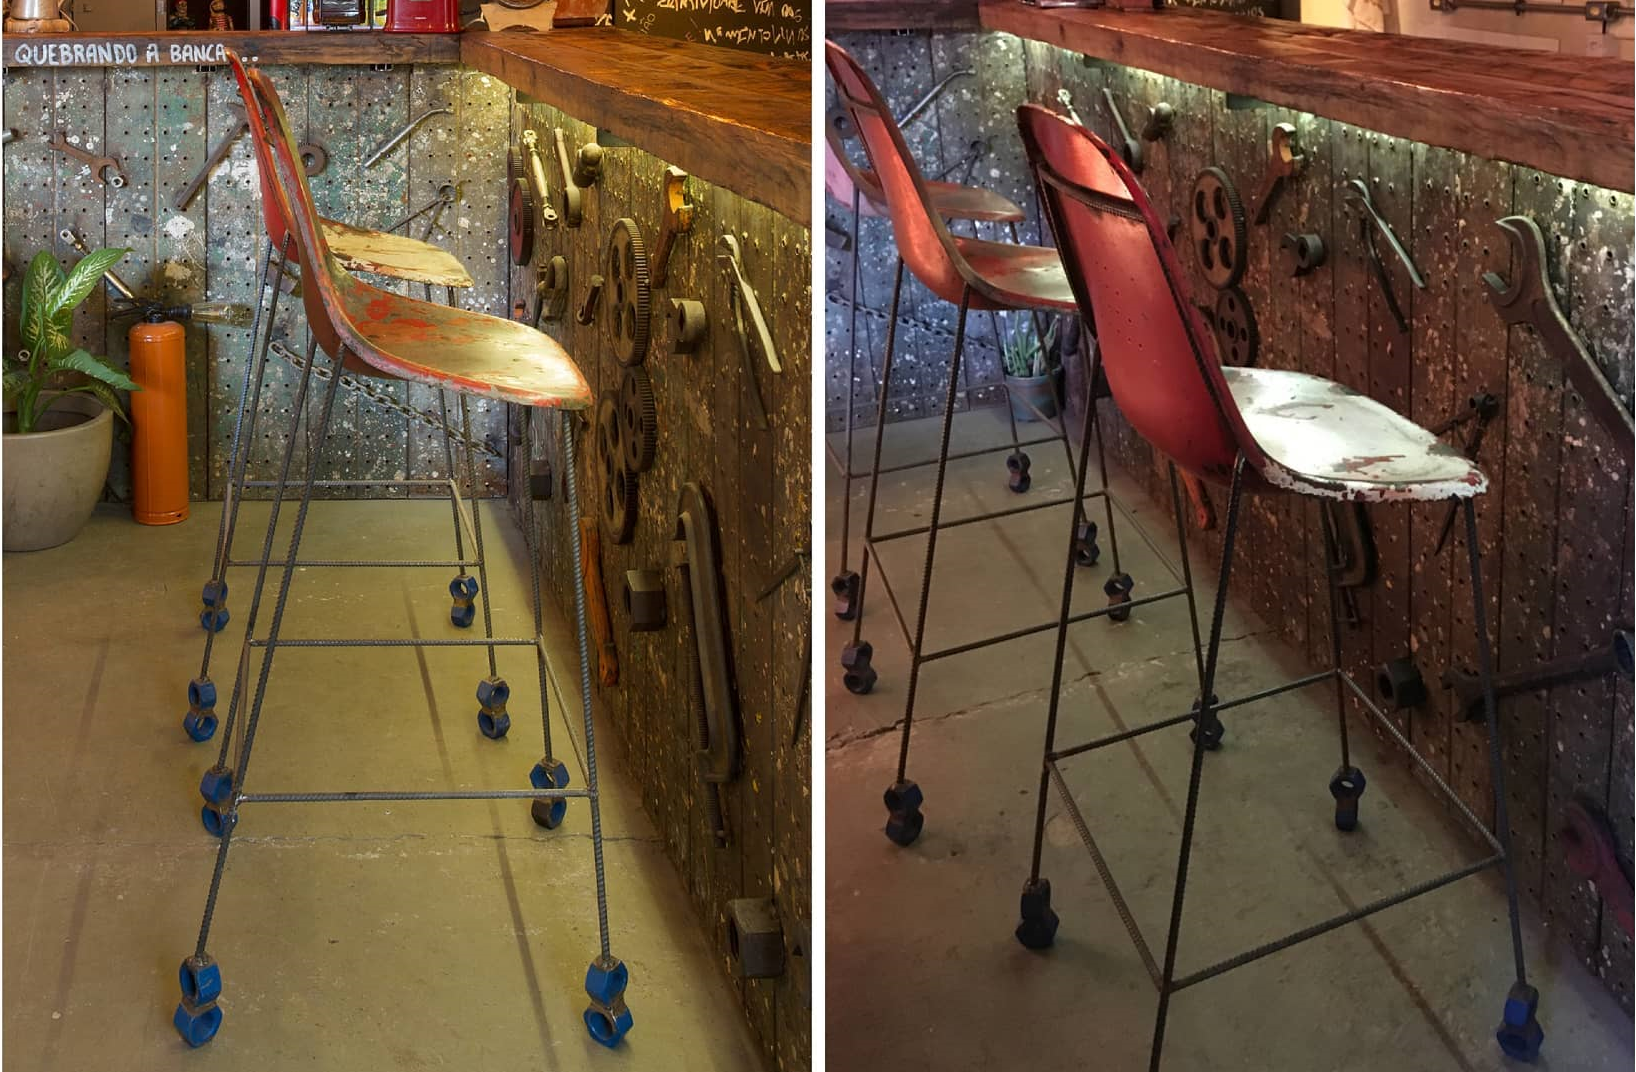 Banqueta fabricada artesanalmente pela InSana Design a partir de um antigo assento do estádio de futebol de São Januário, que após uma reforma descartou as antigas cadeiras